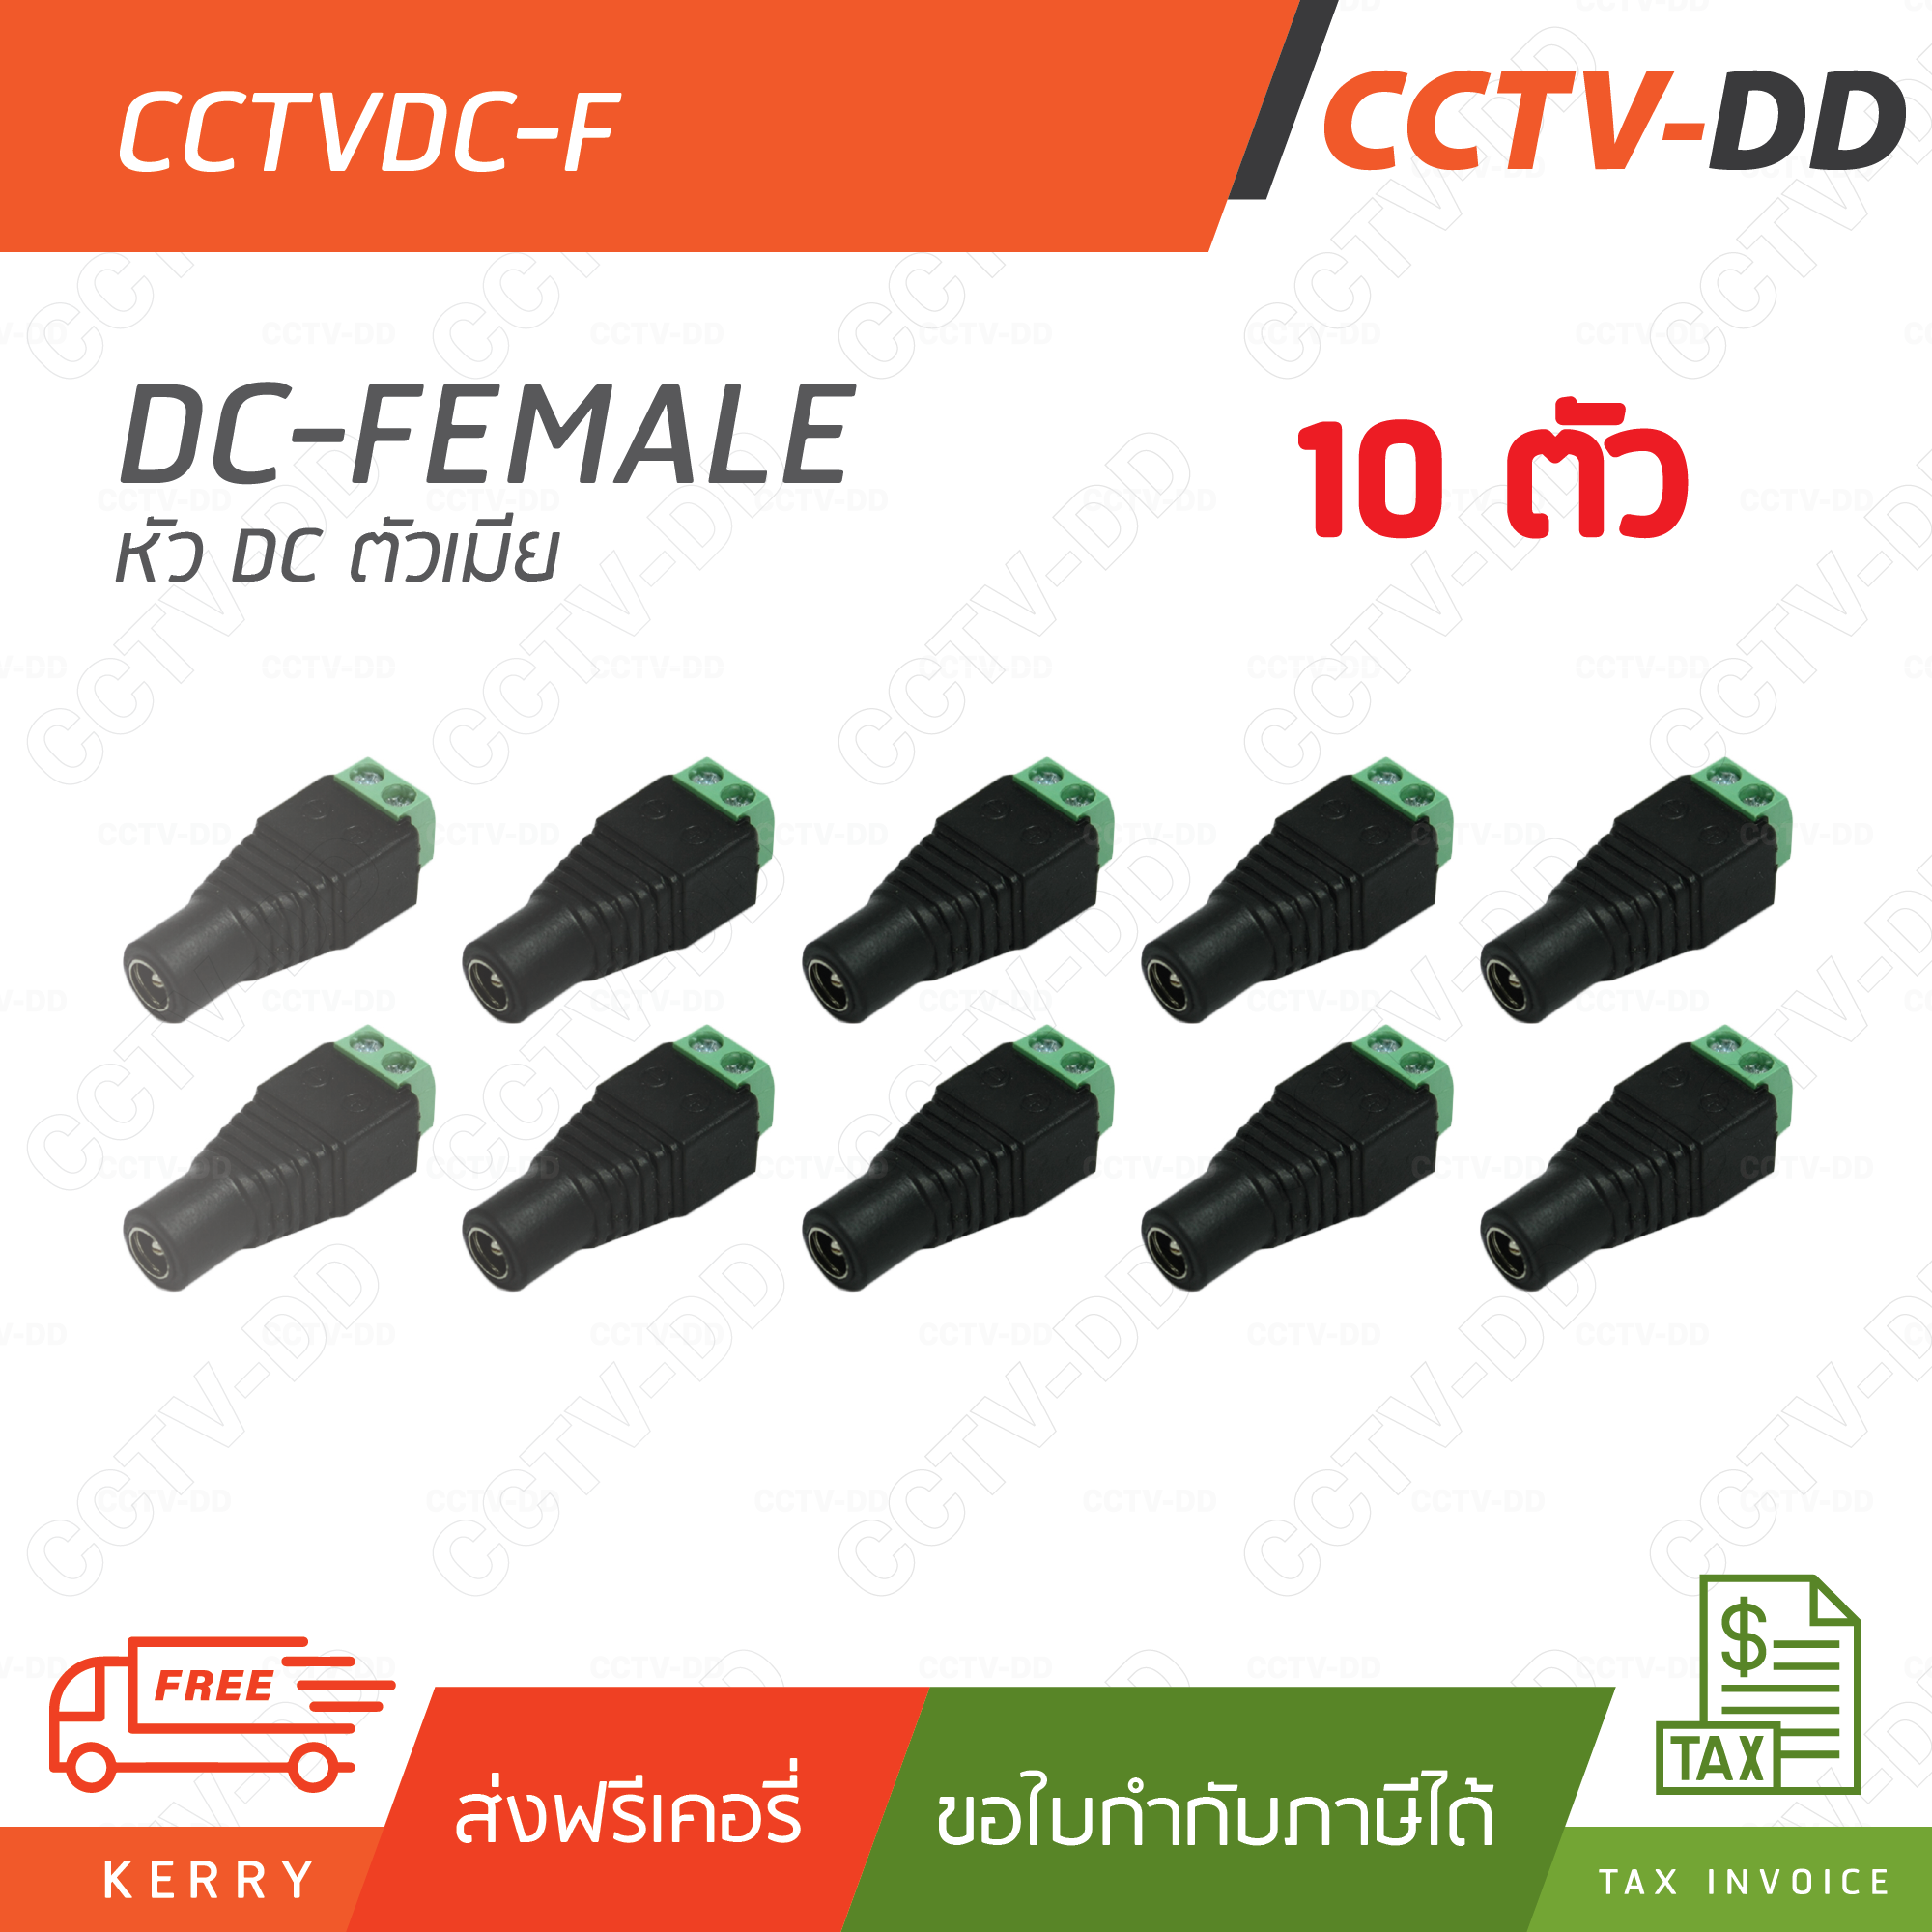 ชุด 10 ตัว 12V DC 10 female Connector (ตัวเมีย) สำหรับกล้องวงจรปิด